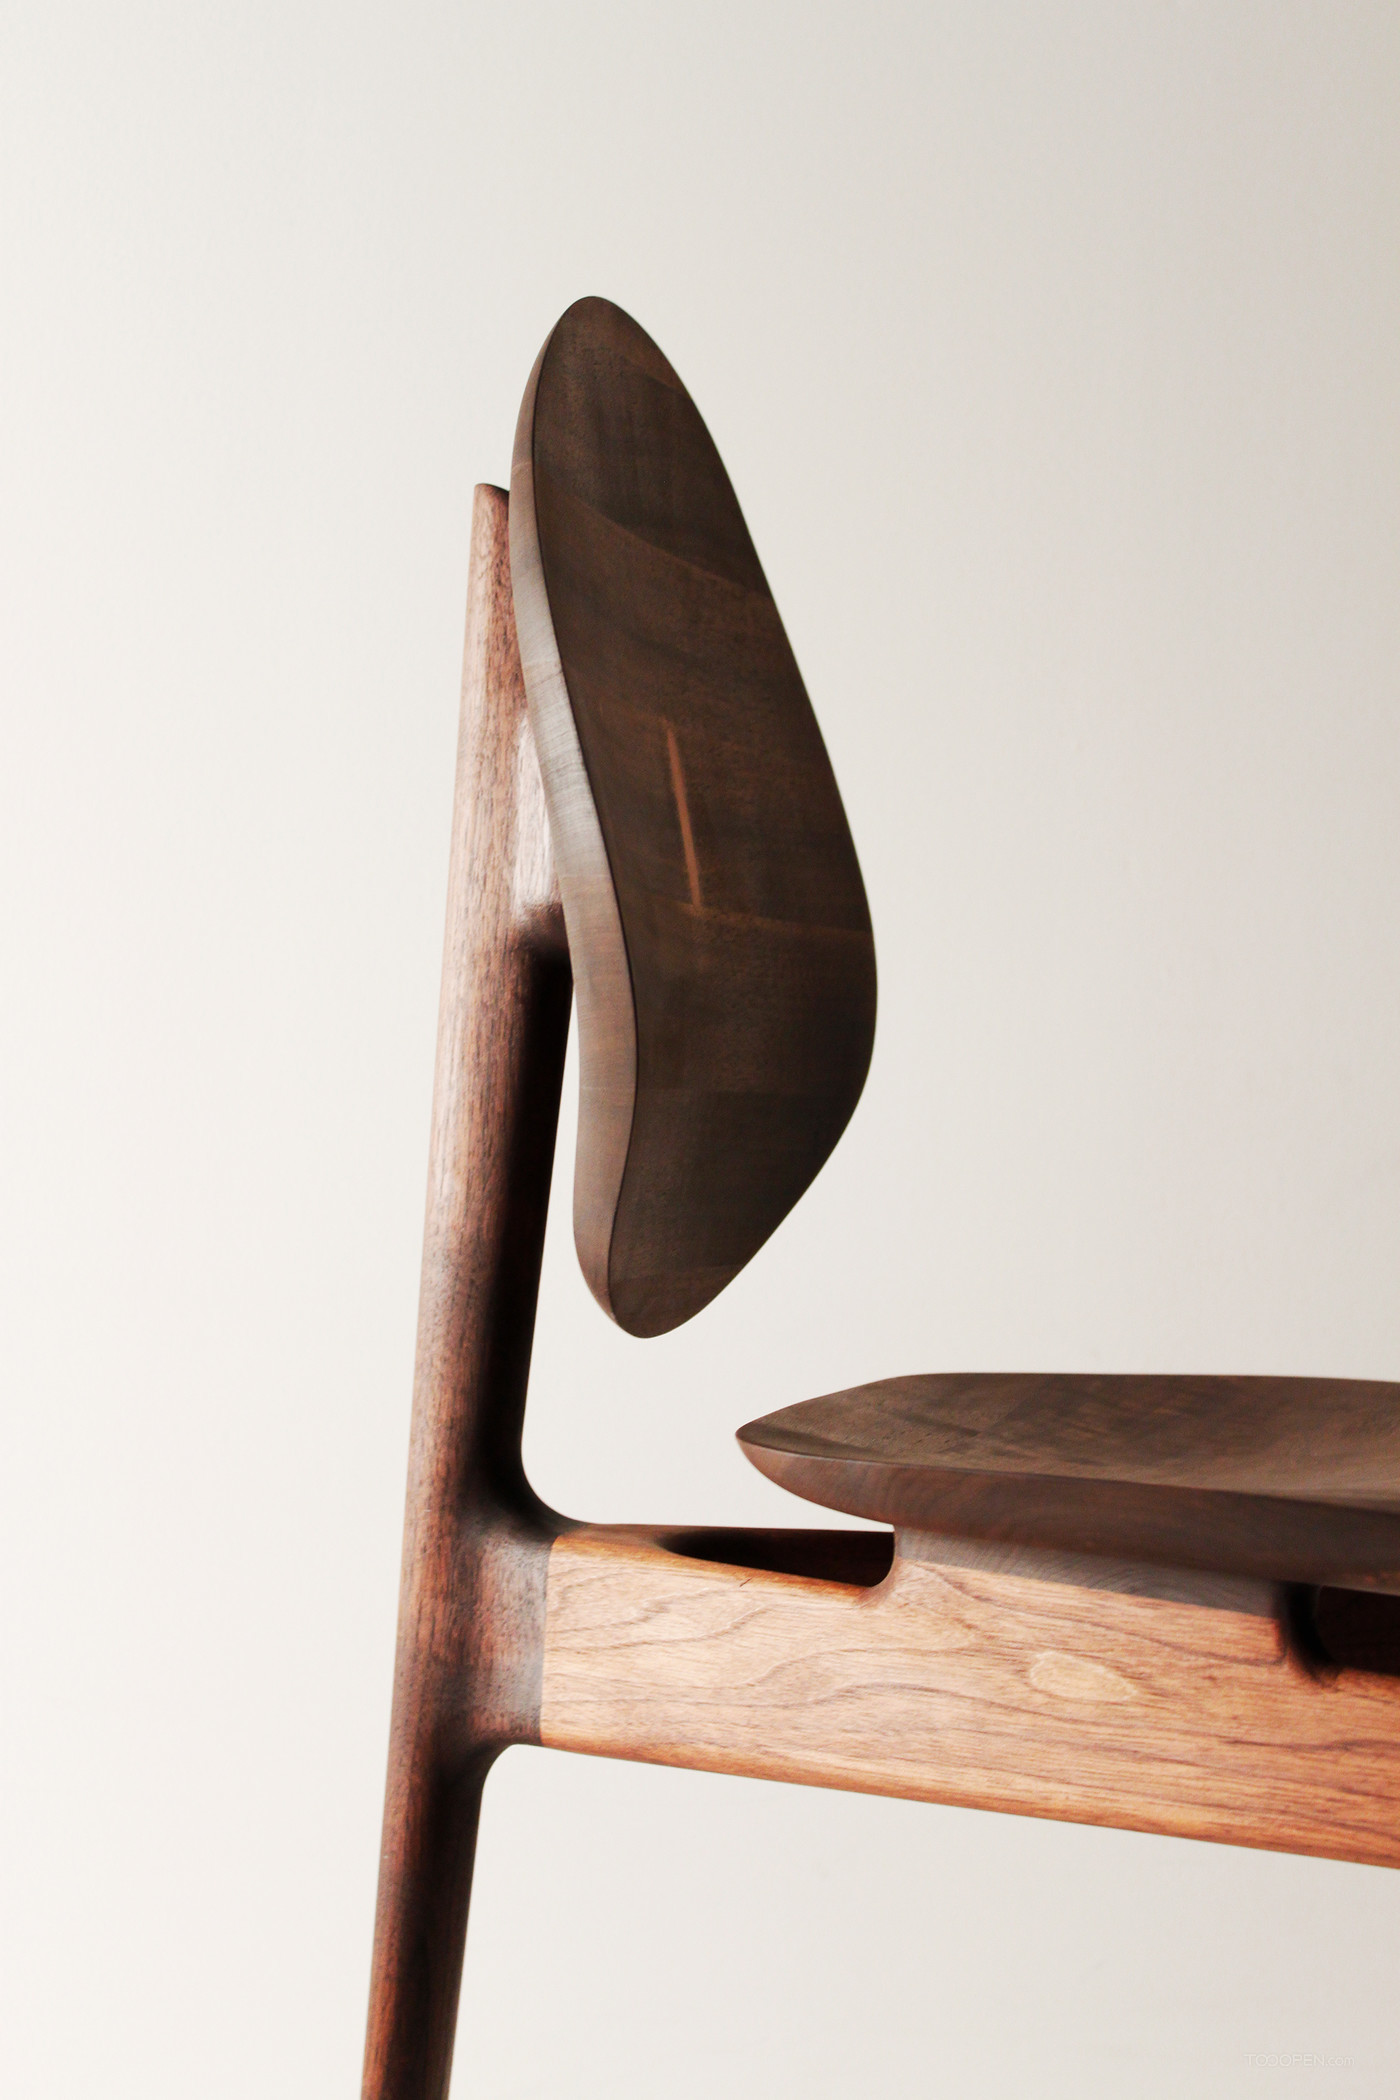 国外创意胡桃木椅家具产品设计欣赏-03